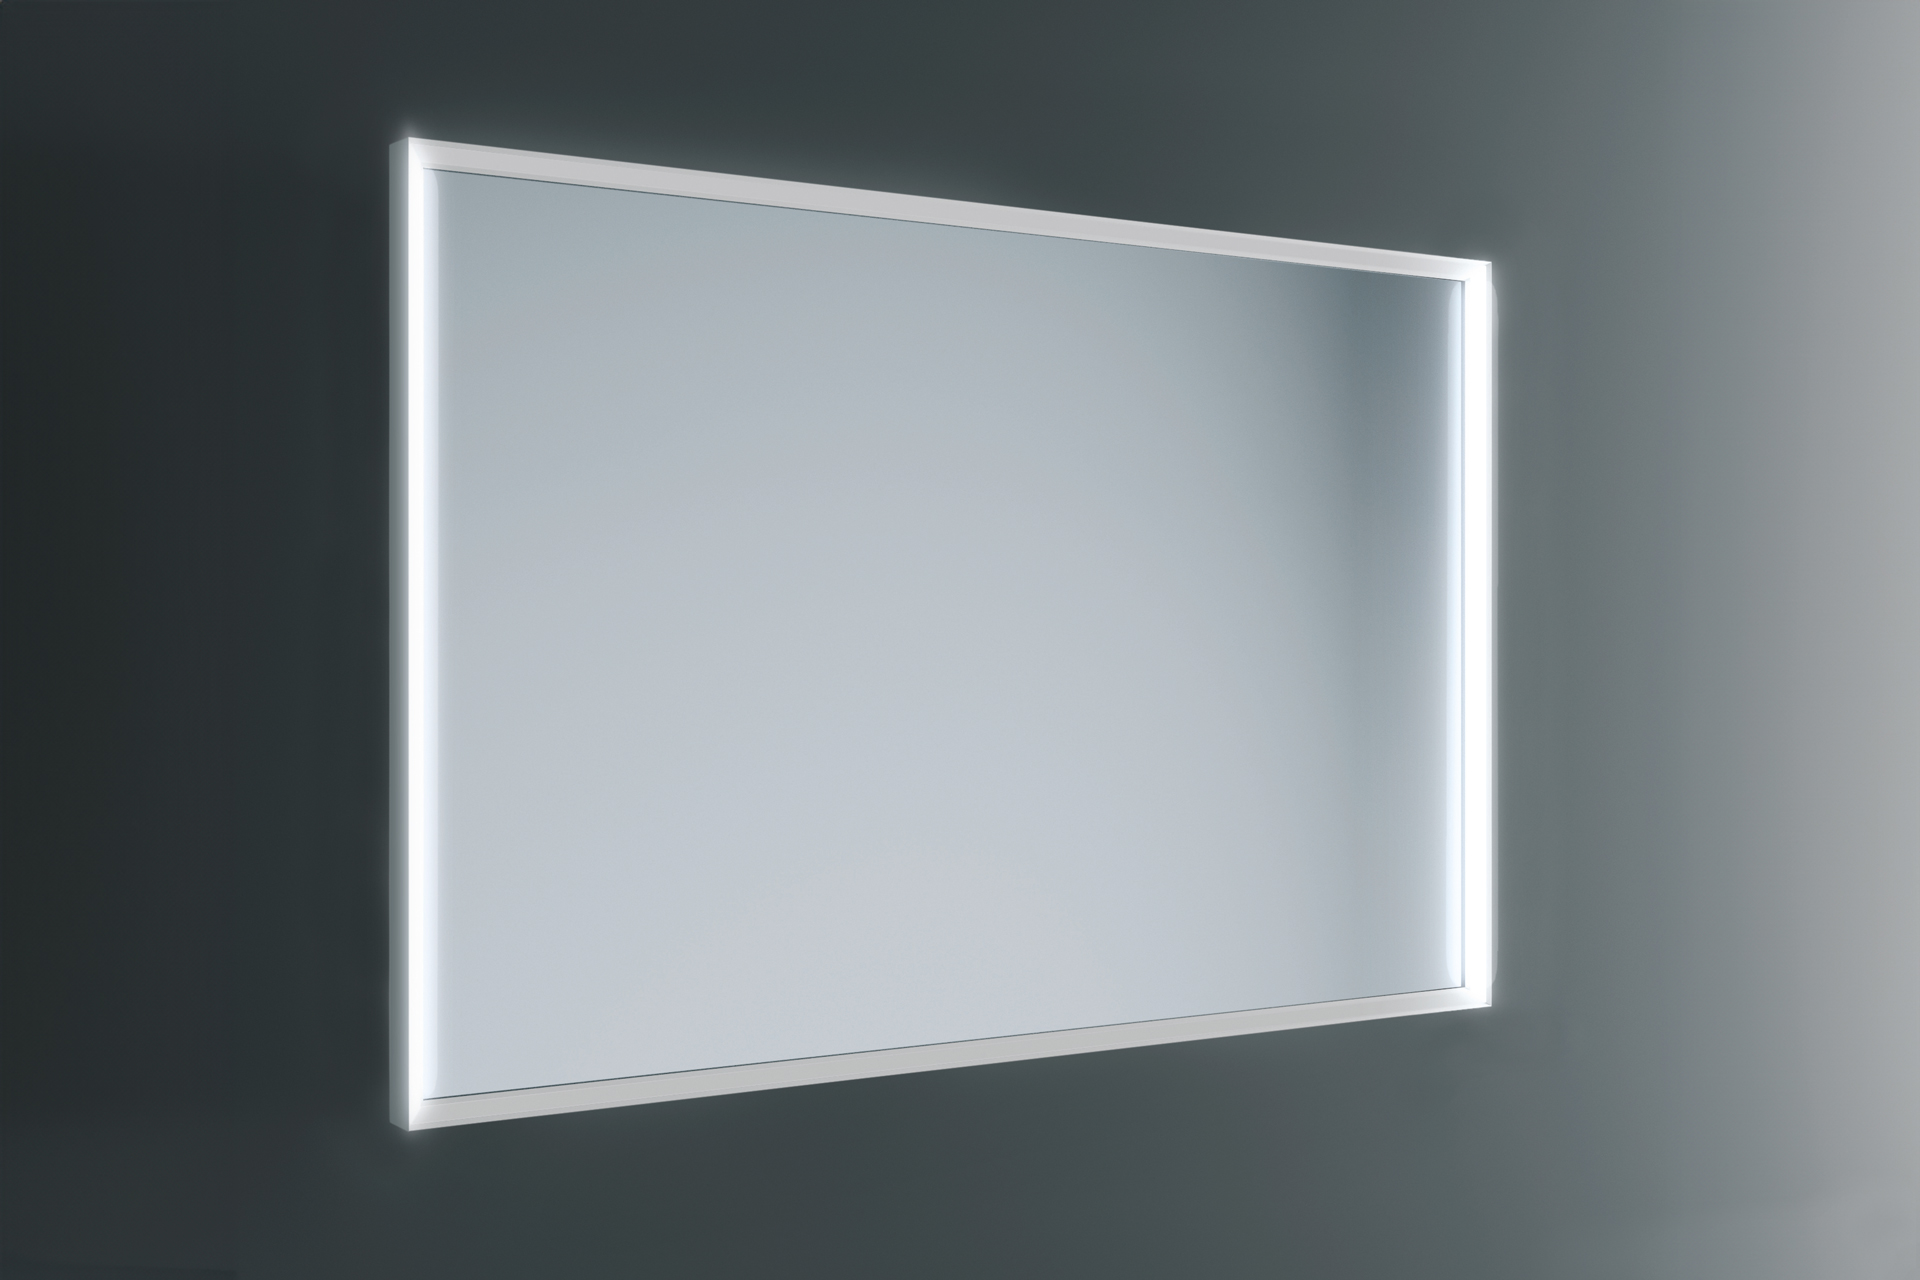 Specchio con telaio in alluminio verniciato. Con luce frontale verticale interno telaio DUPLICATO